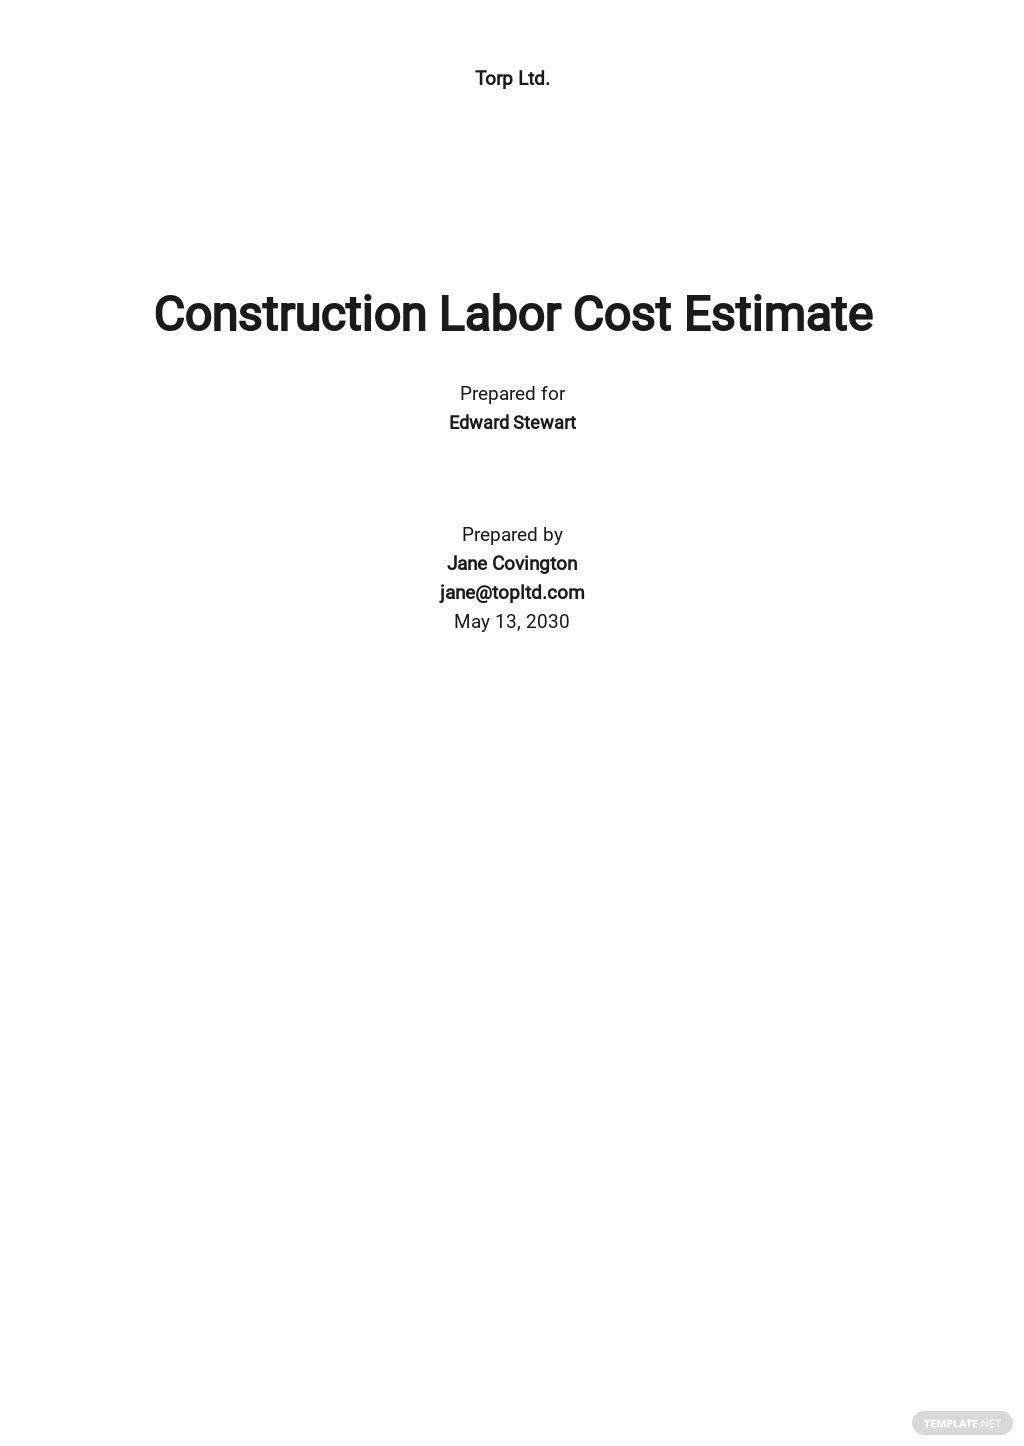 labor-cost-estimate-template